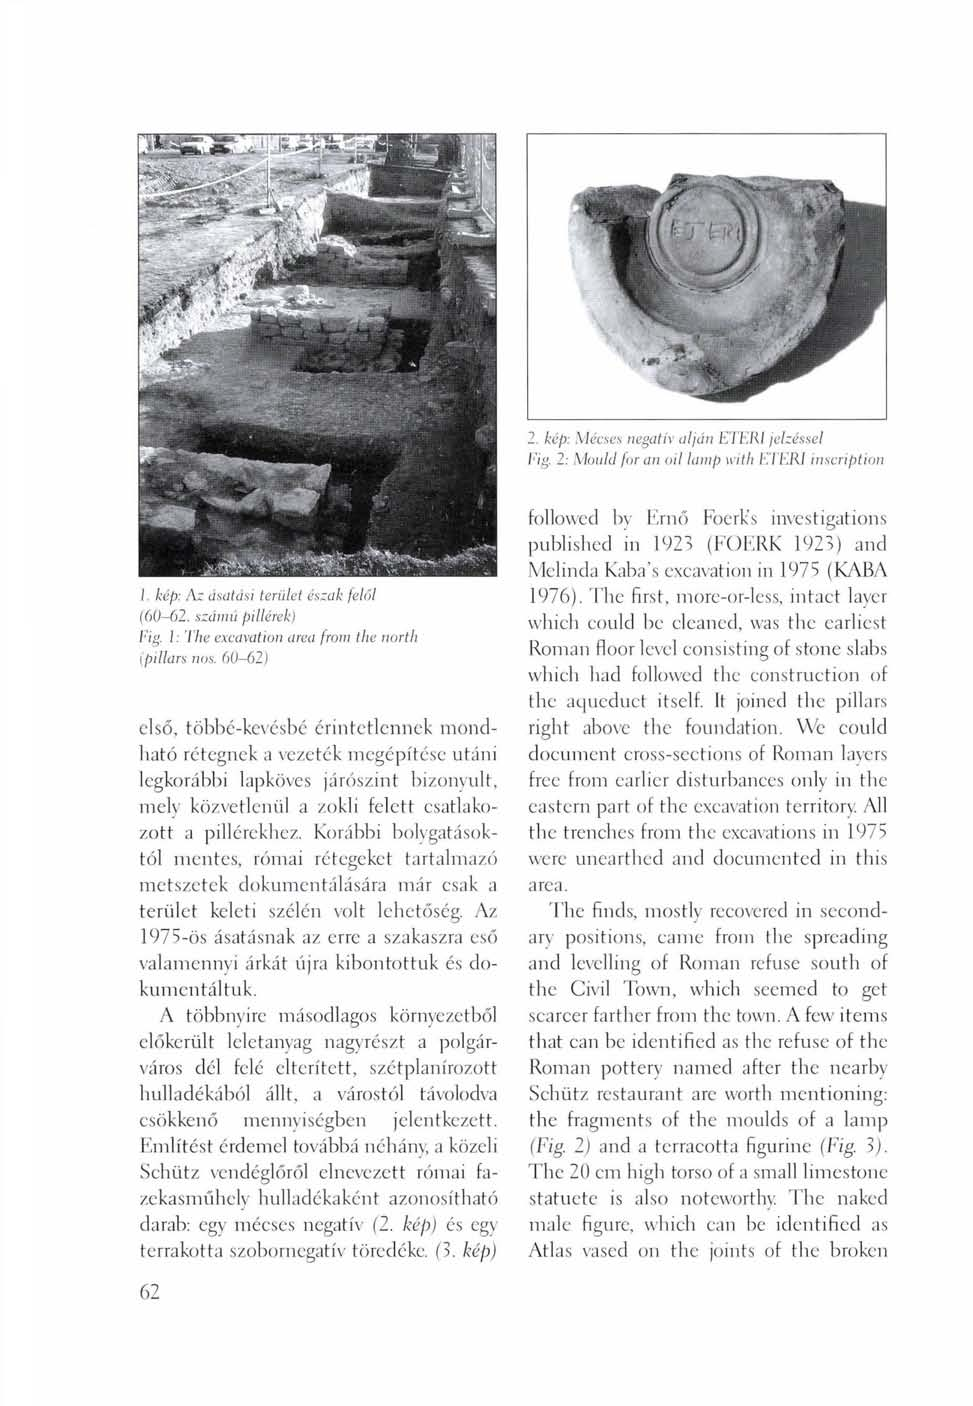 2. kép: Mécses negatív alján ElERI jelzéssel Fig. 2: Mould for an oil lamp with ETER1 inscription J. kép: Az ásatási terület észak felől (60-62. számú pillérek) Fig.